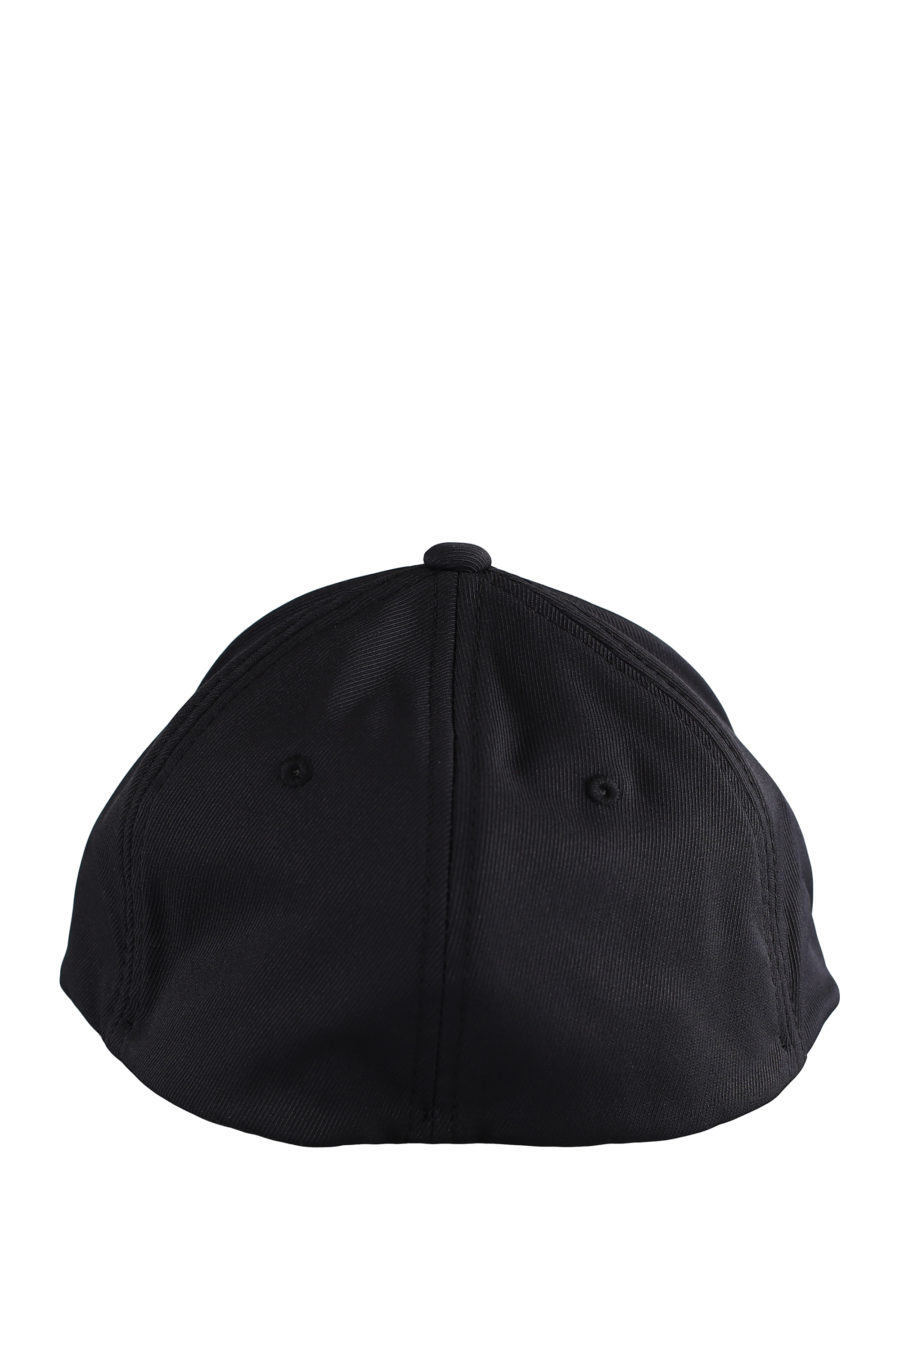 Black cap with white "Karl" logo - IMG 9596